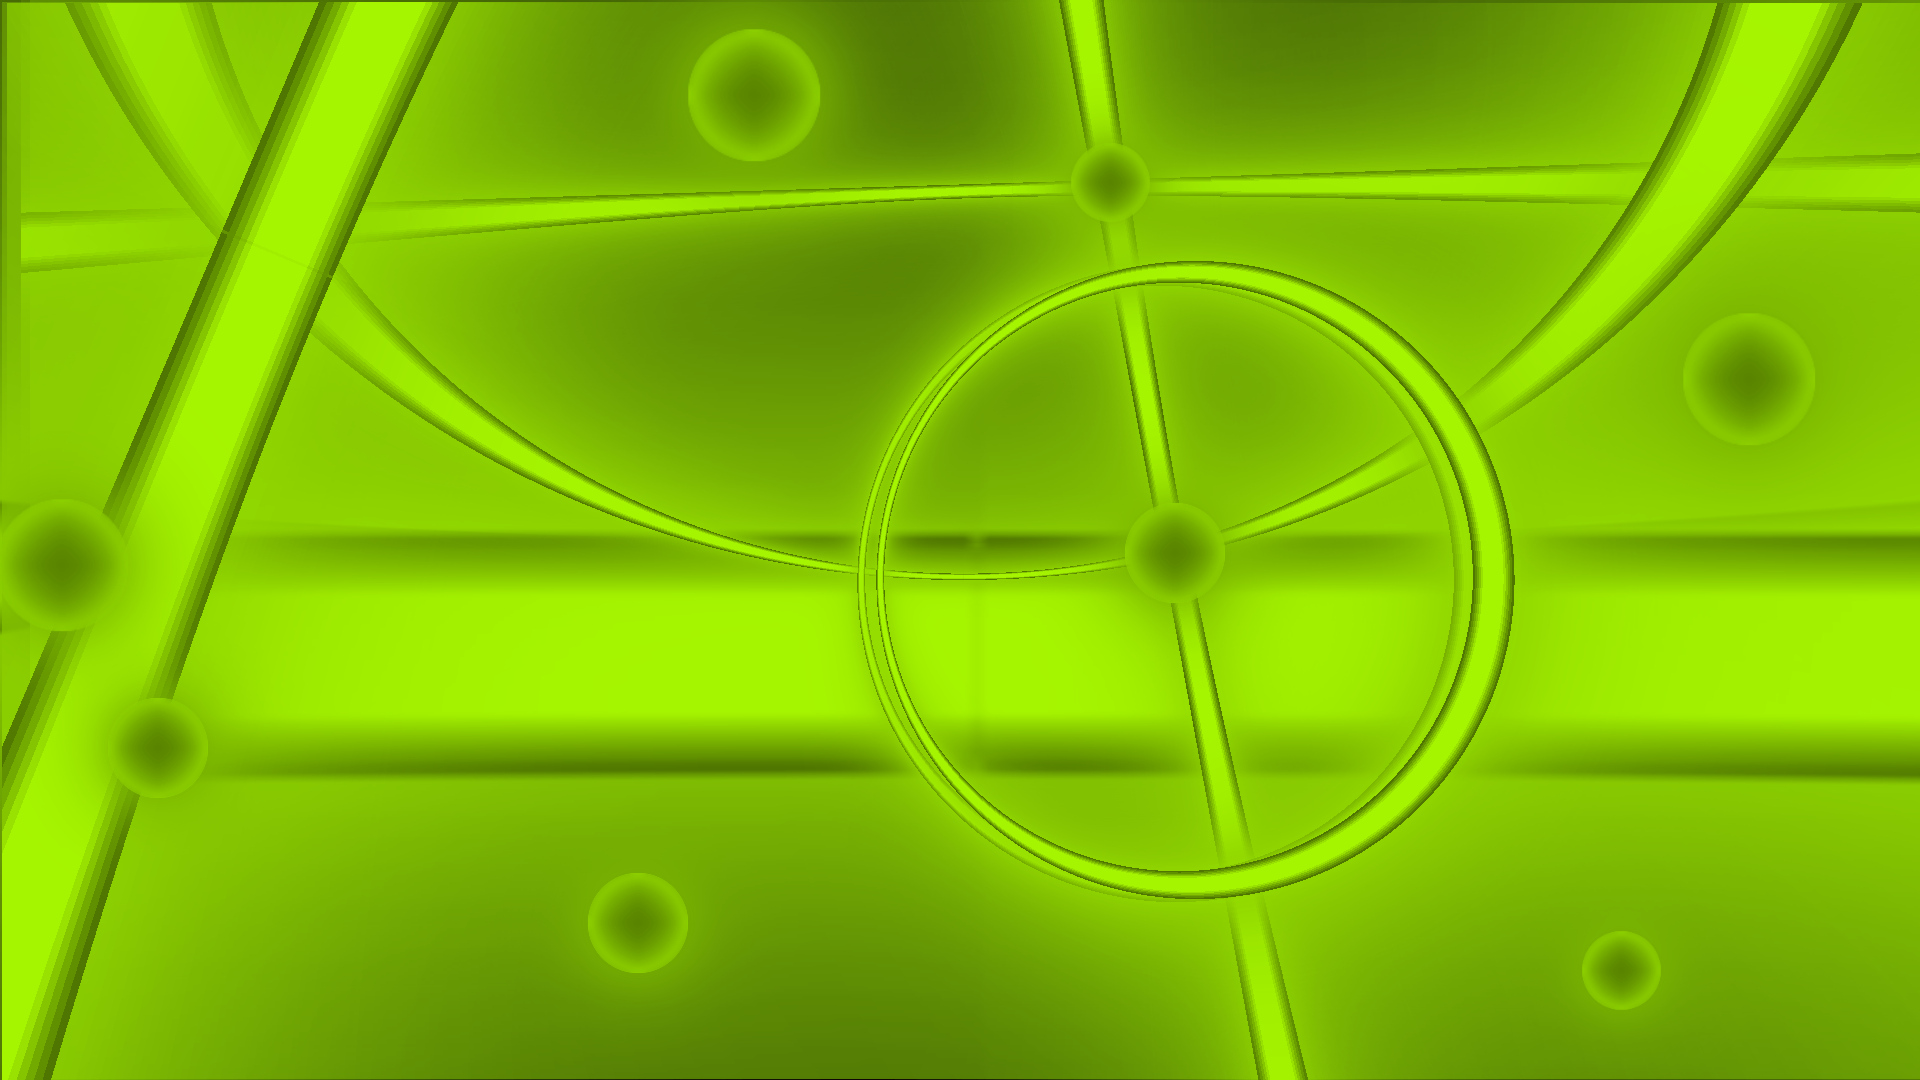 GreenLinesAndSpheres.jpg